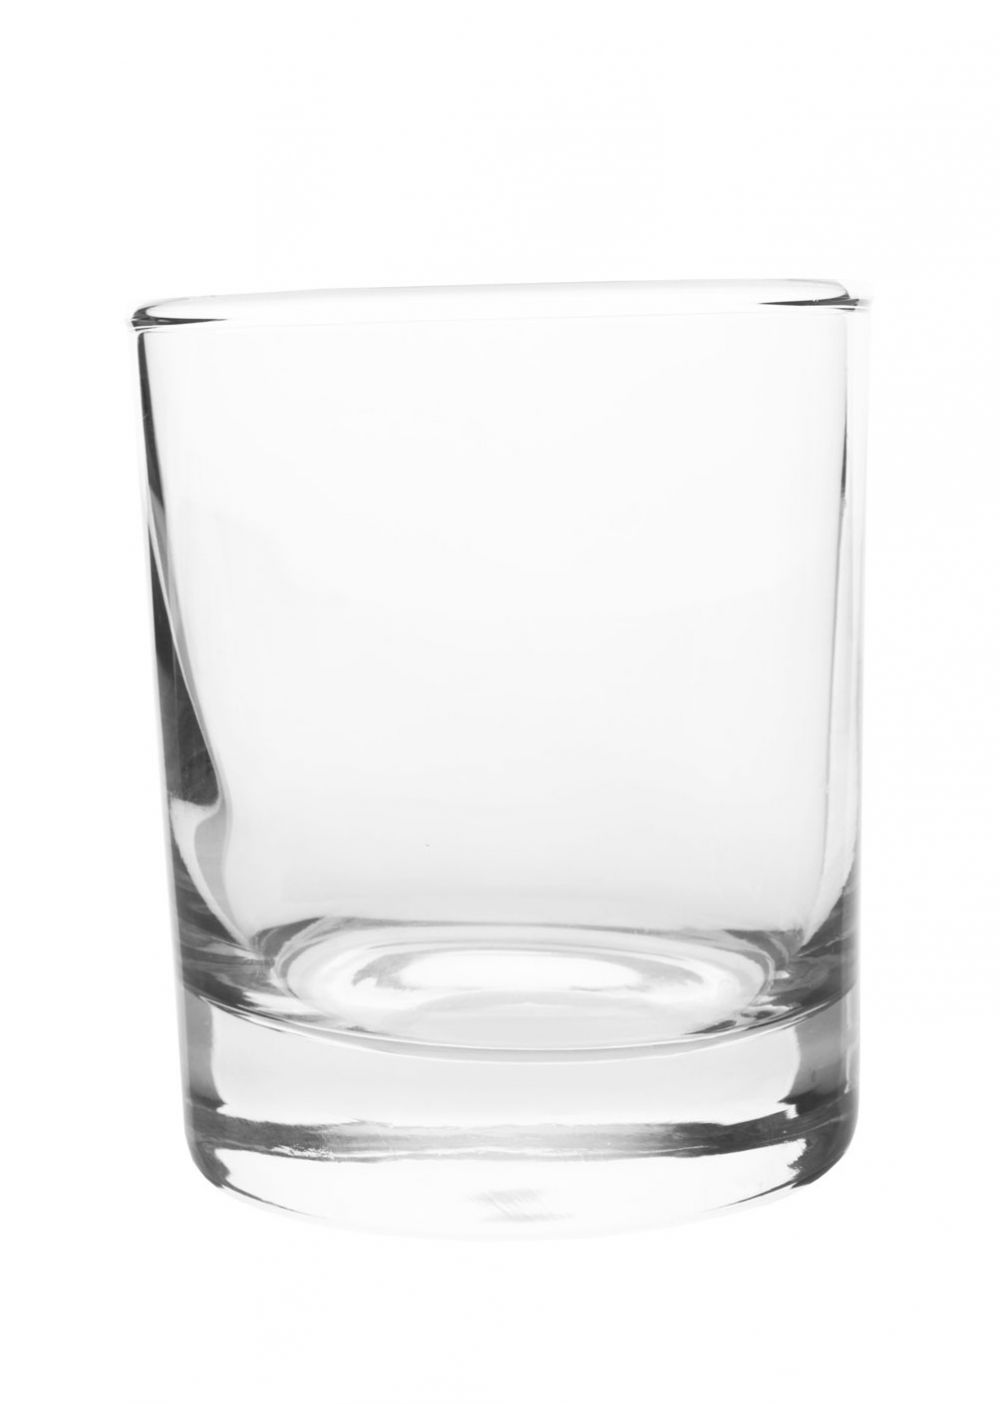 Le verre à whisky
L'ABUS D'ALCOOL EST DANGEREUX POUR LA SANTÉ, À CONSOMMER AVEC MODÉRATION